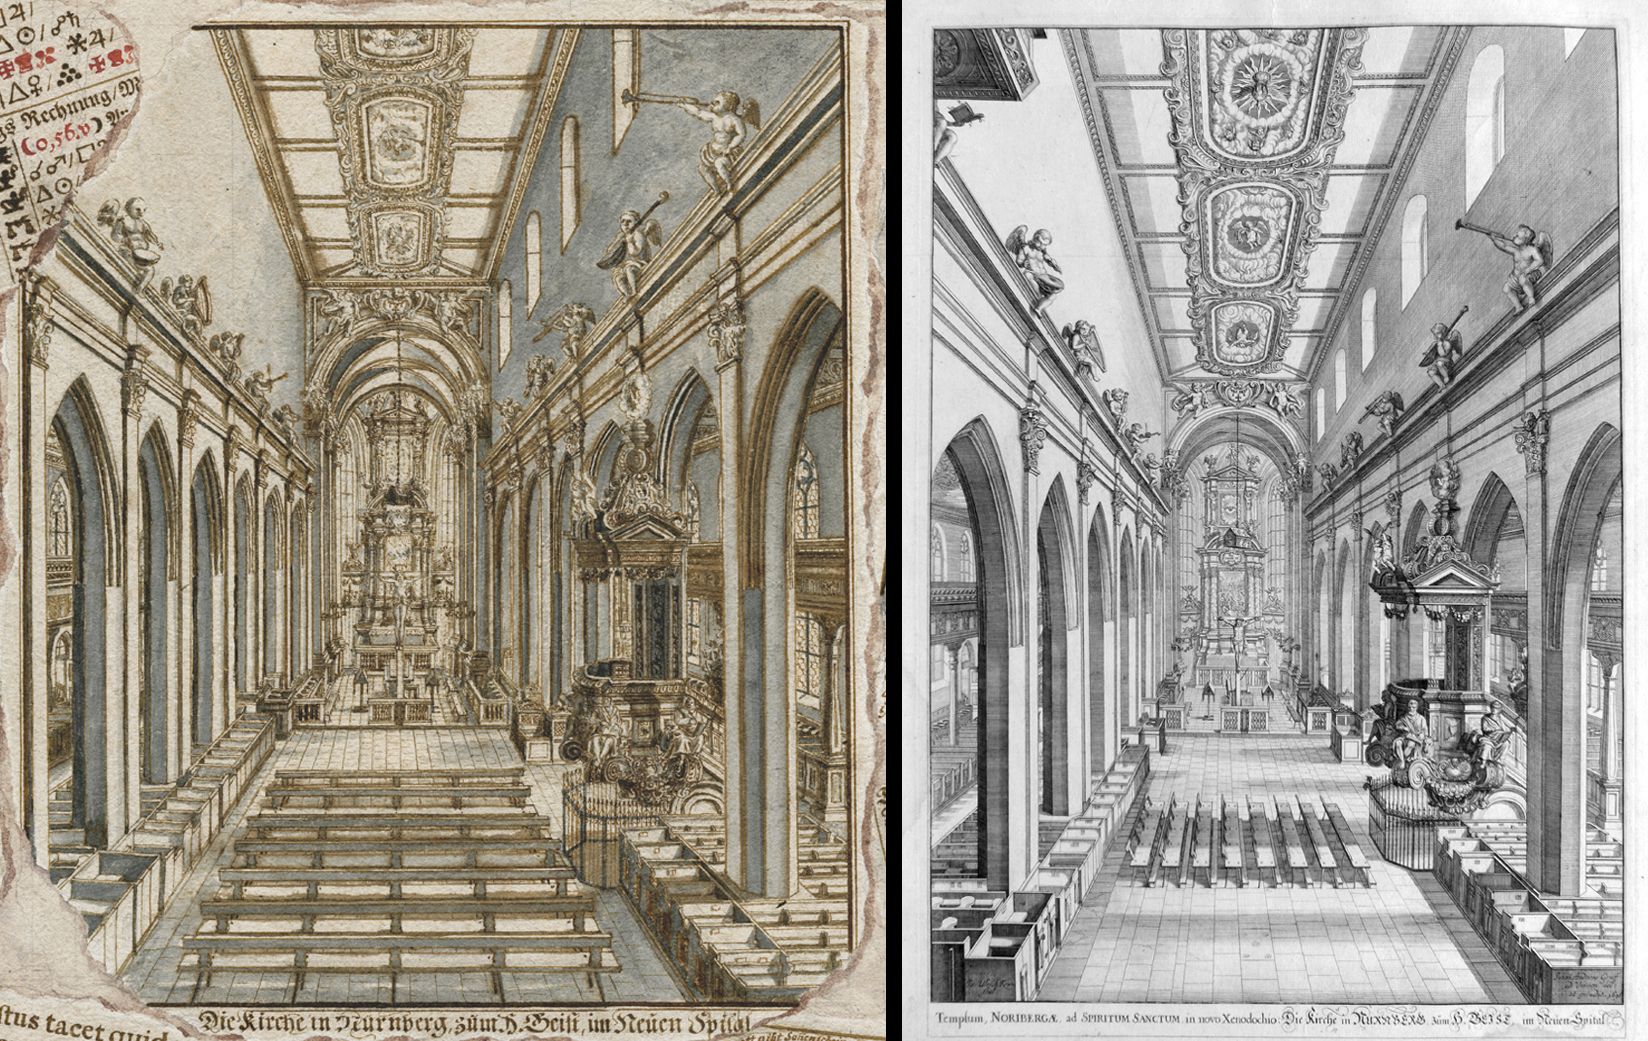 Quodlibet zum Heilig-Geist-Spital links Innenansicht der Spitalkirche auf dem Quodlibet, rechts die Vorlage von Johann Andreas Graff aus dem Jahre 1696